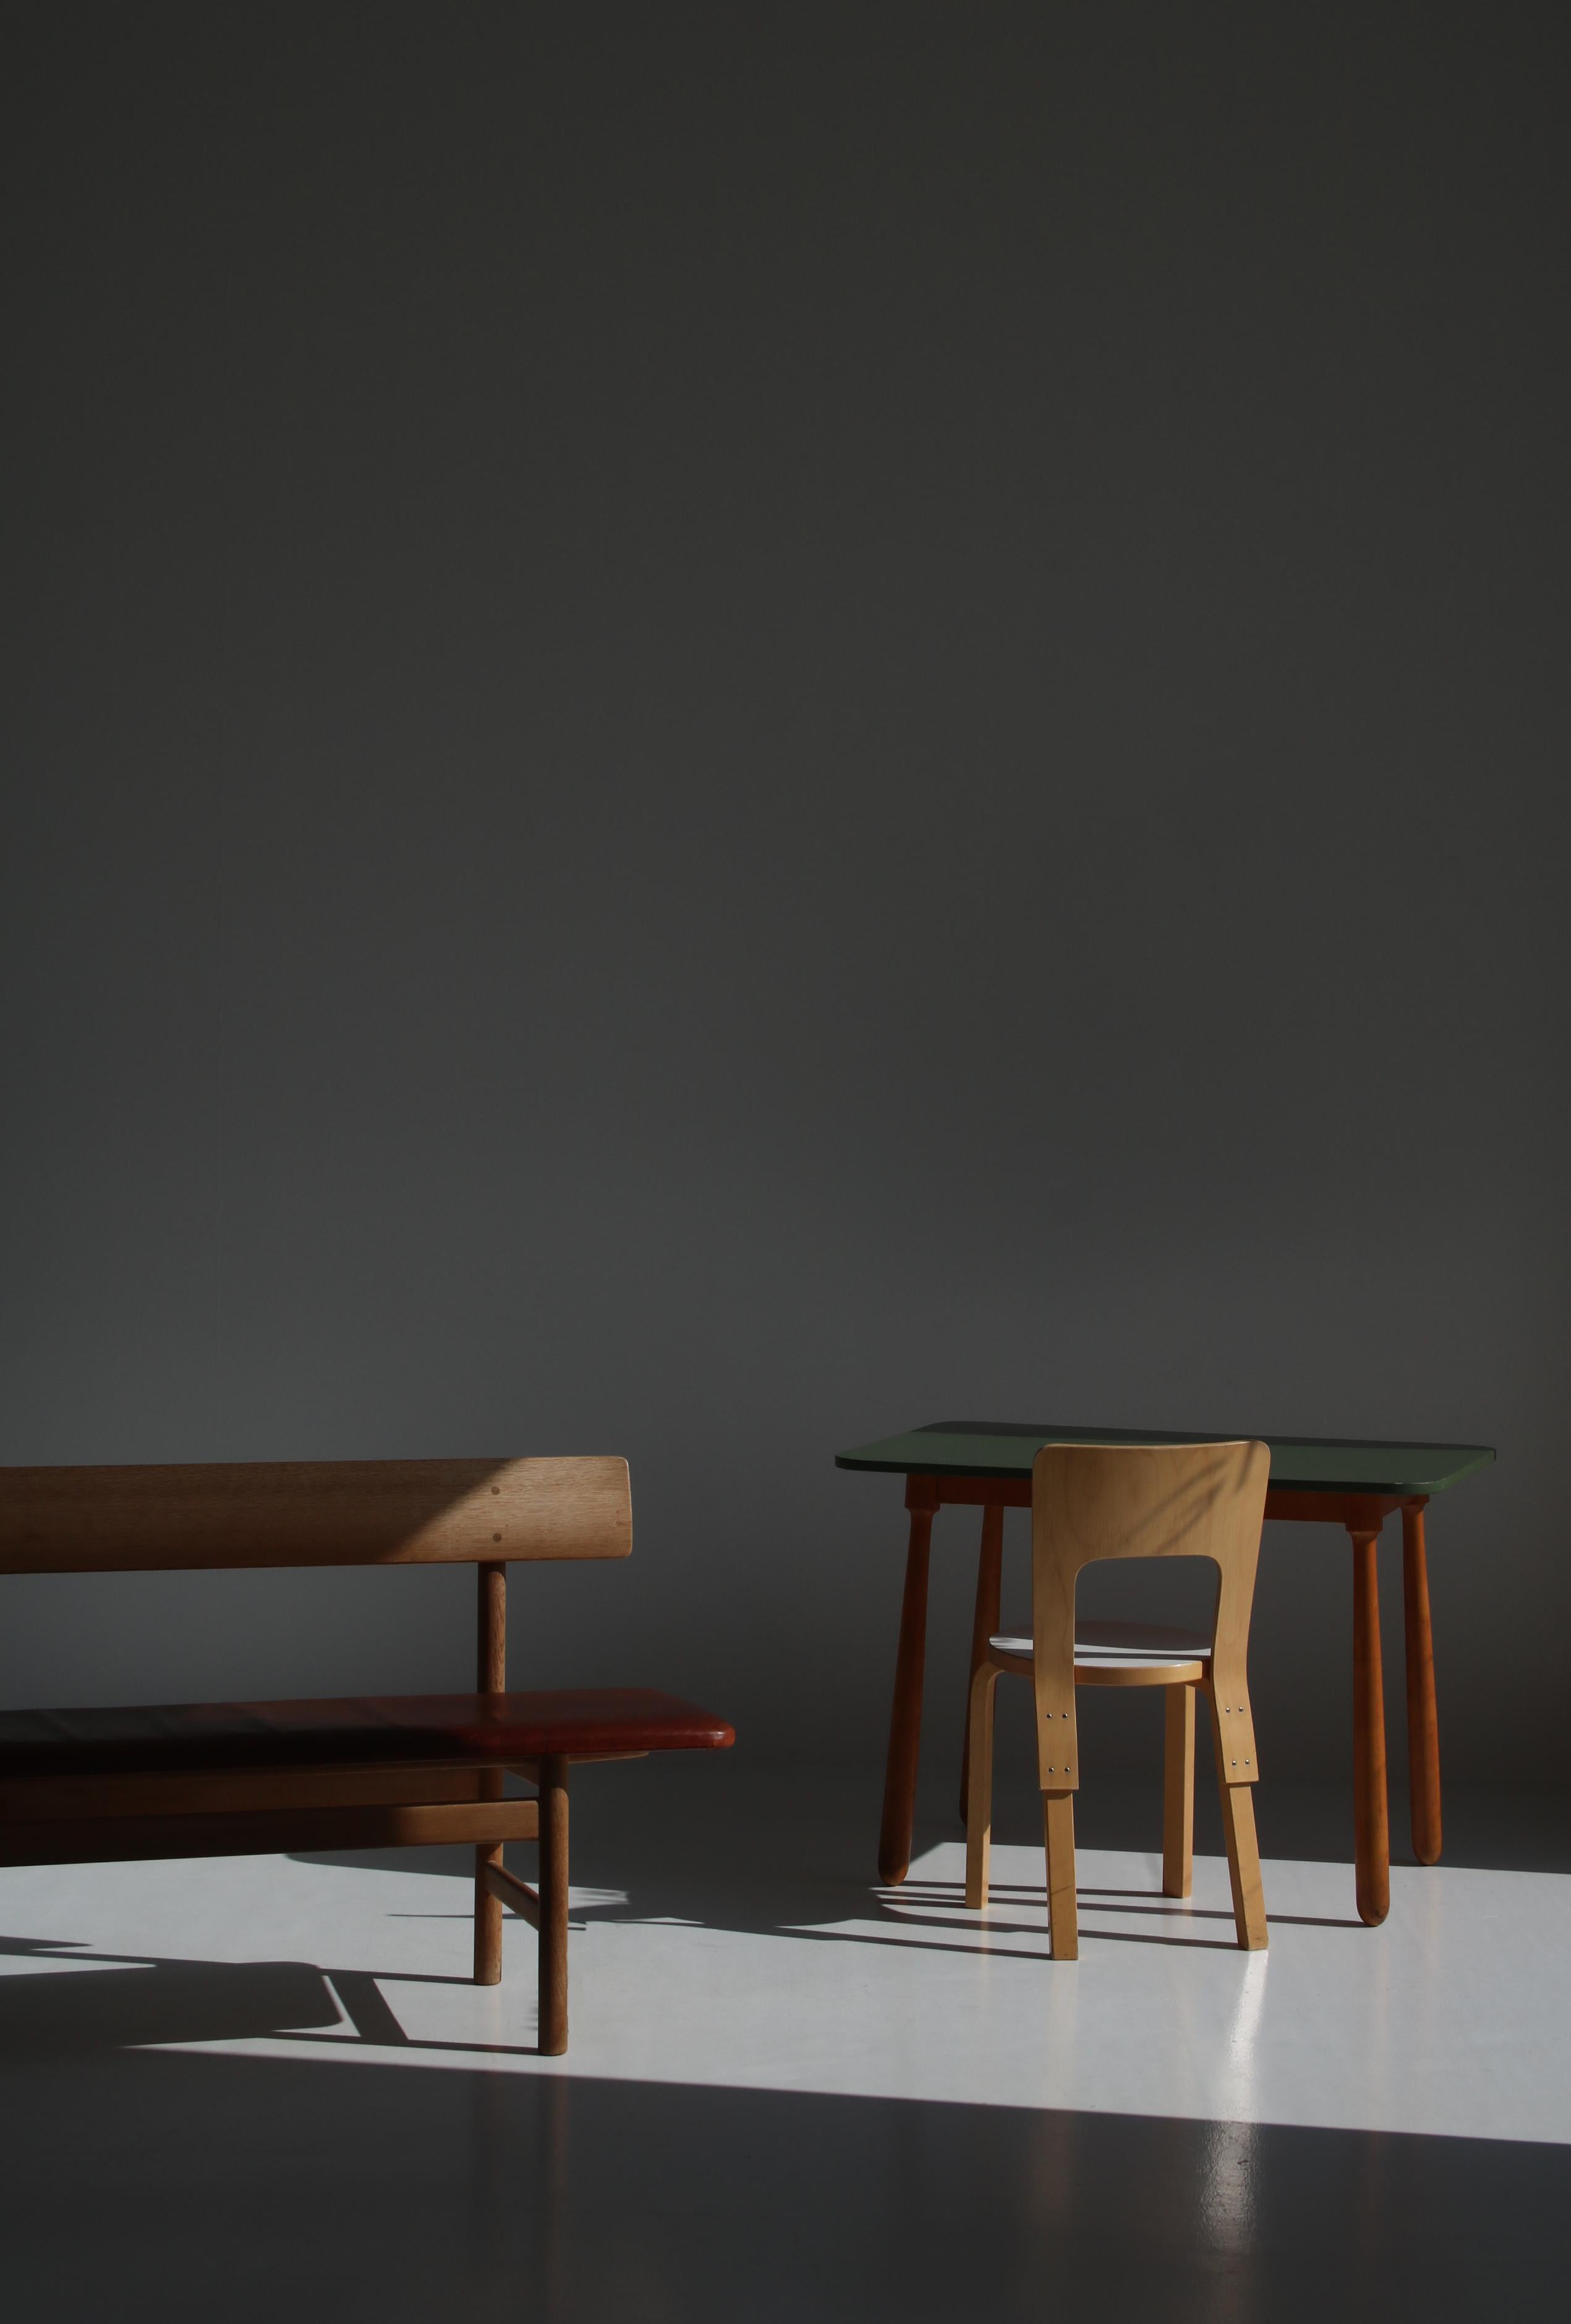 Früher und wichtiger Schreibtisch, der dem dänischen Designer Arnold Madsen zugeschrieben wird. Die keulenförmigen Beine sind aus massiven, handgedrechselten Buchenholzstücken gefertigt und ähneln den Beinen von Madsens berühmtem 